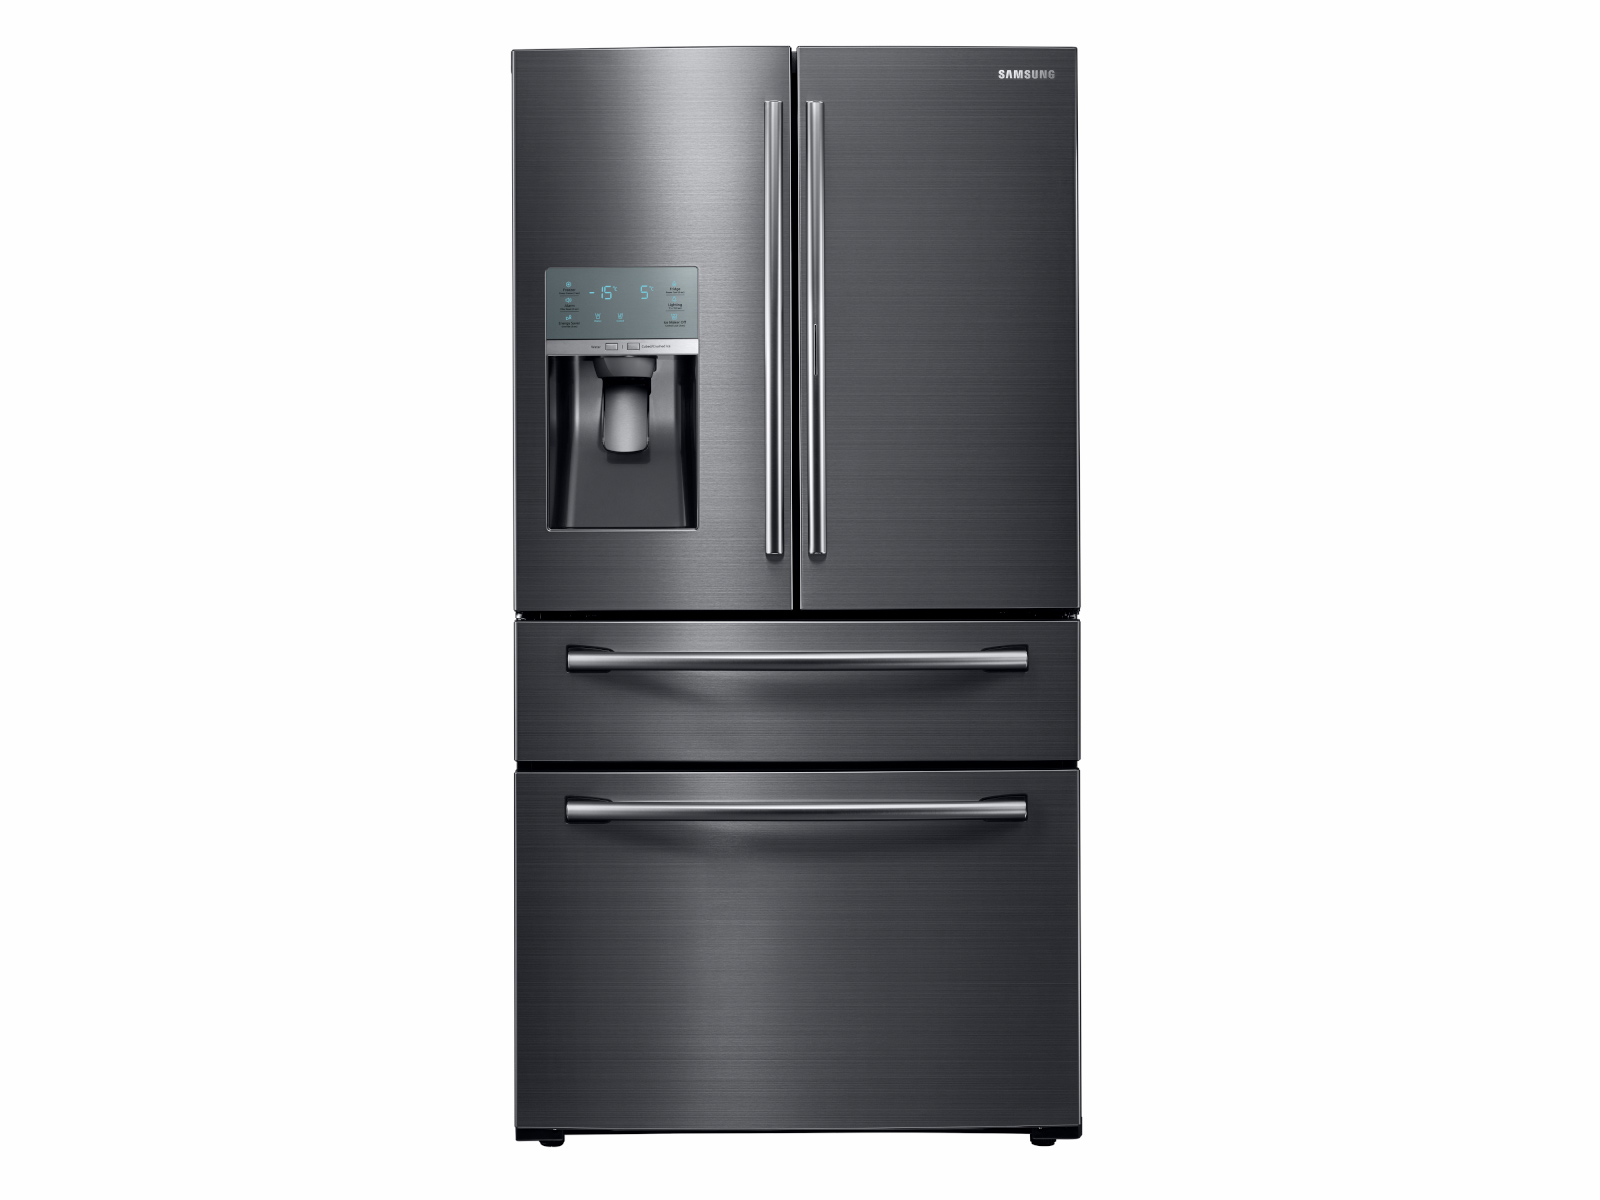 Samsung Food Showcase 28-cu ft 4-Door French Door Refrigerator with Ice  Maker and Door within Door (Fingerprint Resistant Black Stainless Steel)  ENERGY STAR at